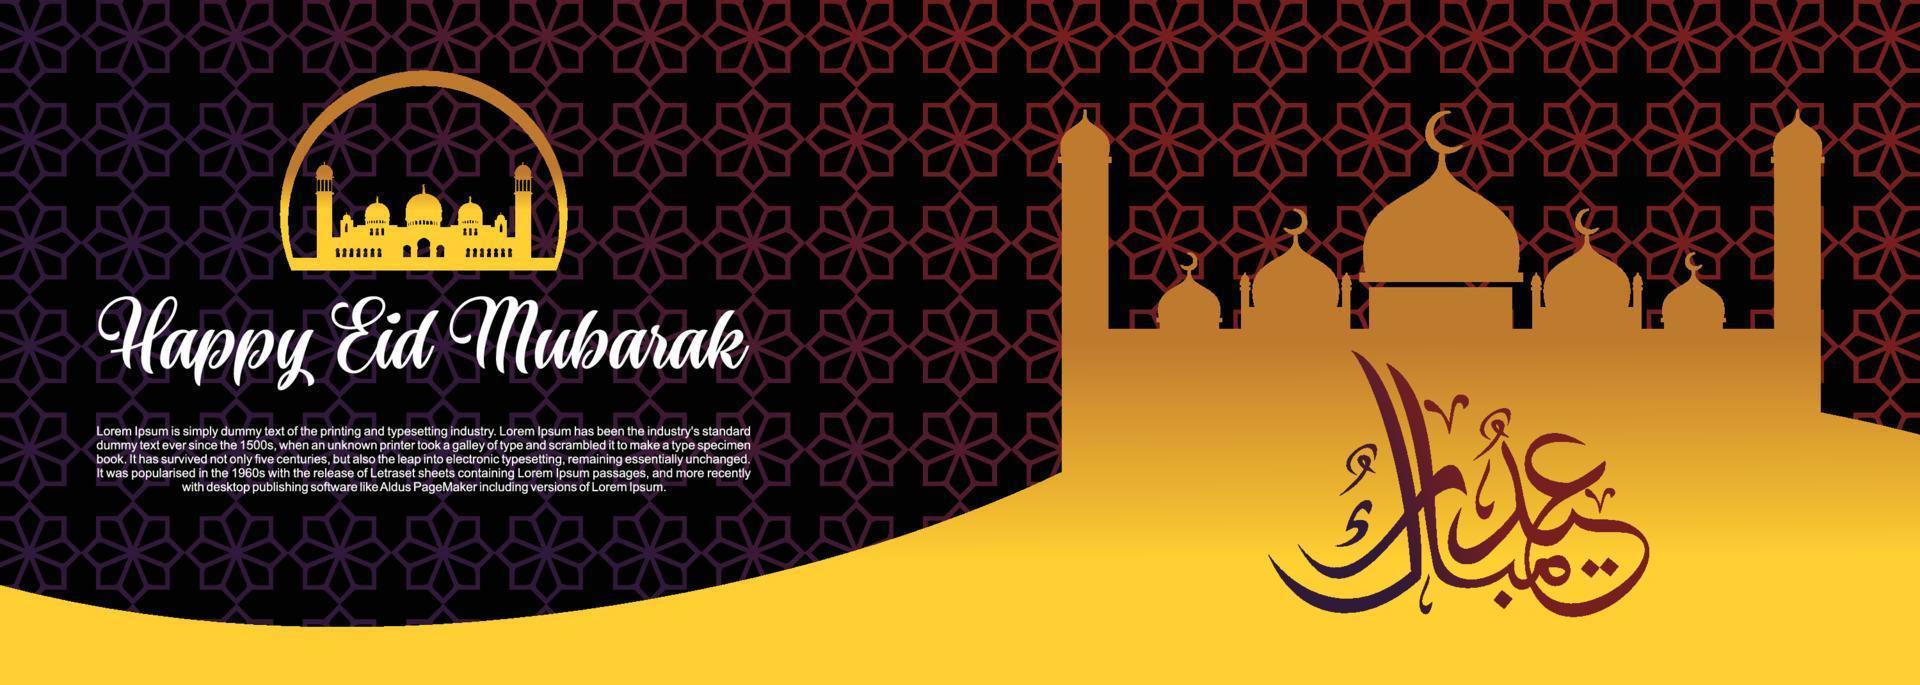 eid mubarak islamischer hintergrund, glückliche eid mubarak fahnenillustration, islamische grußkartenreligionsmuslimische feier. Arabische moderne Kalligrafie vektor